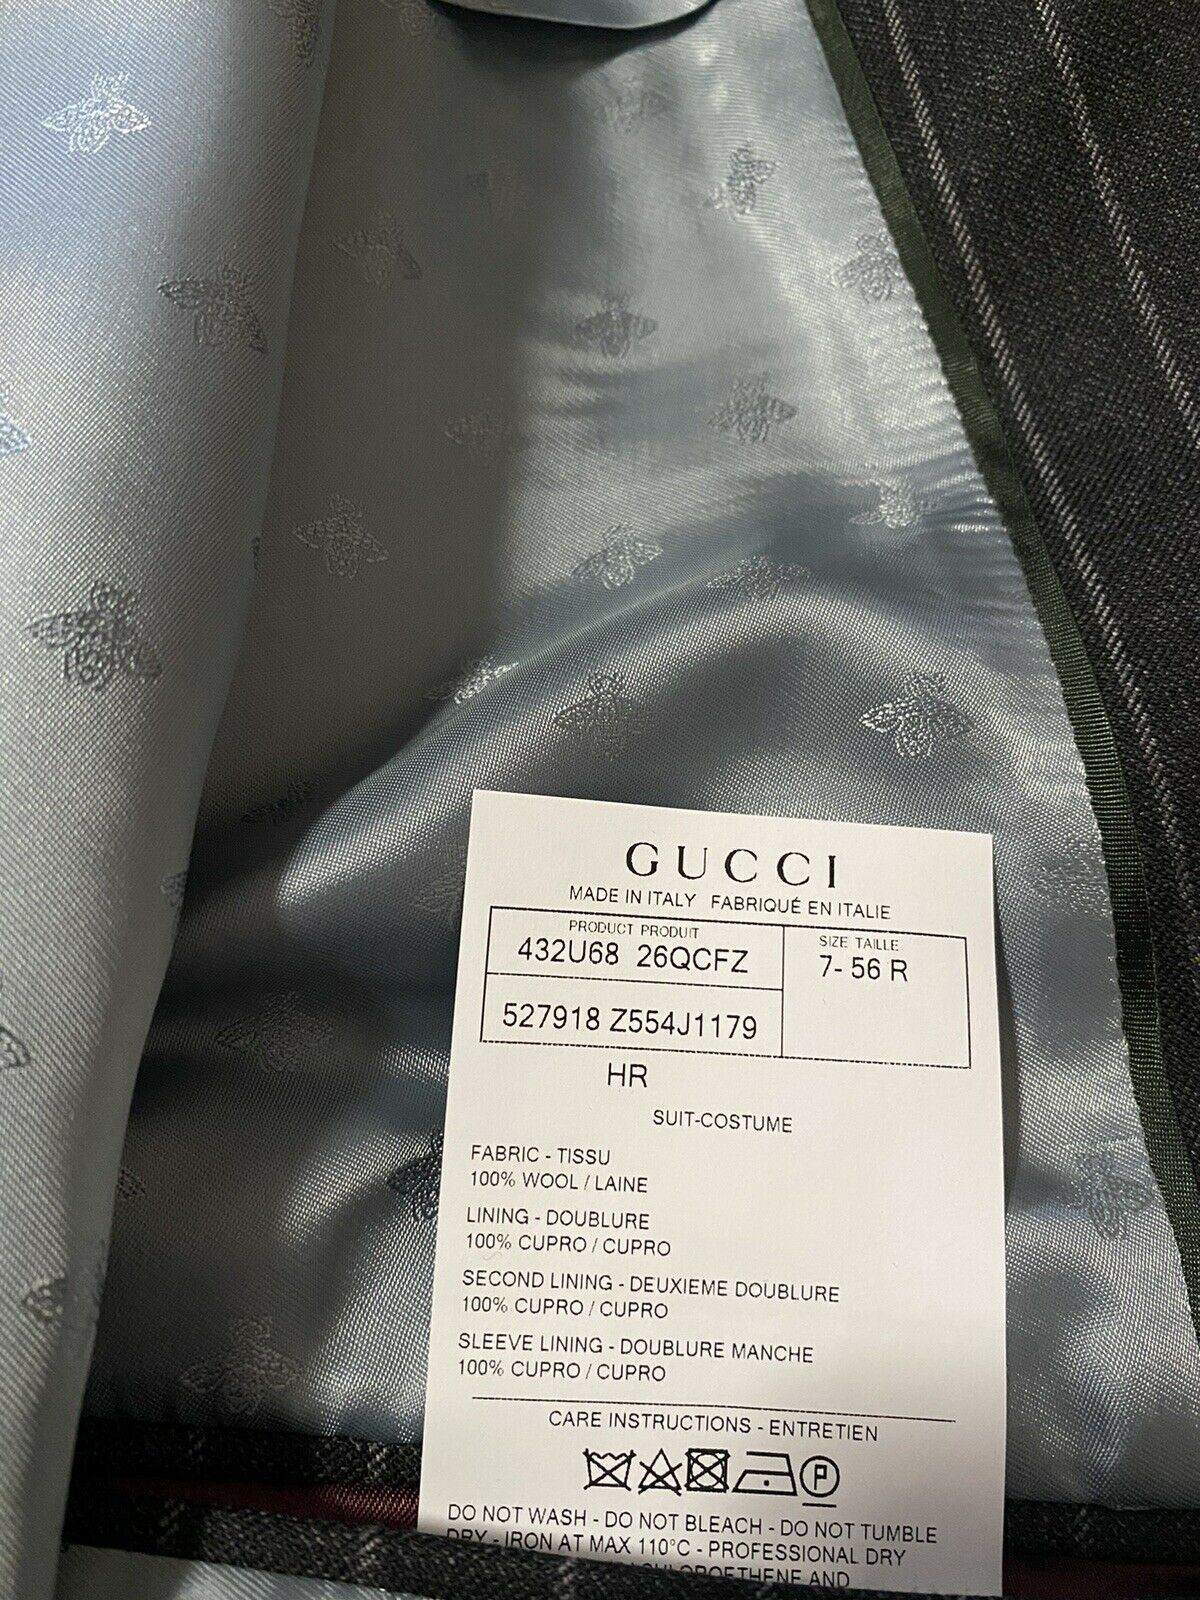 Neuer 4490 $ Gucci Herrenanzug, gestreift, DK-Grau, 46R US (56R Eu), Italien